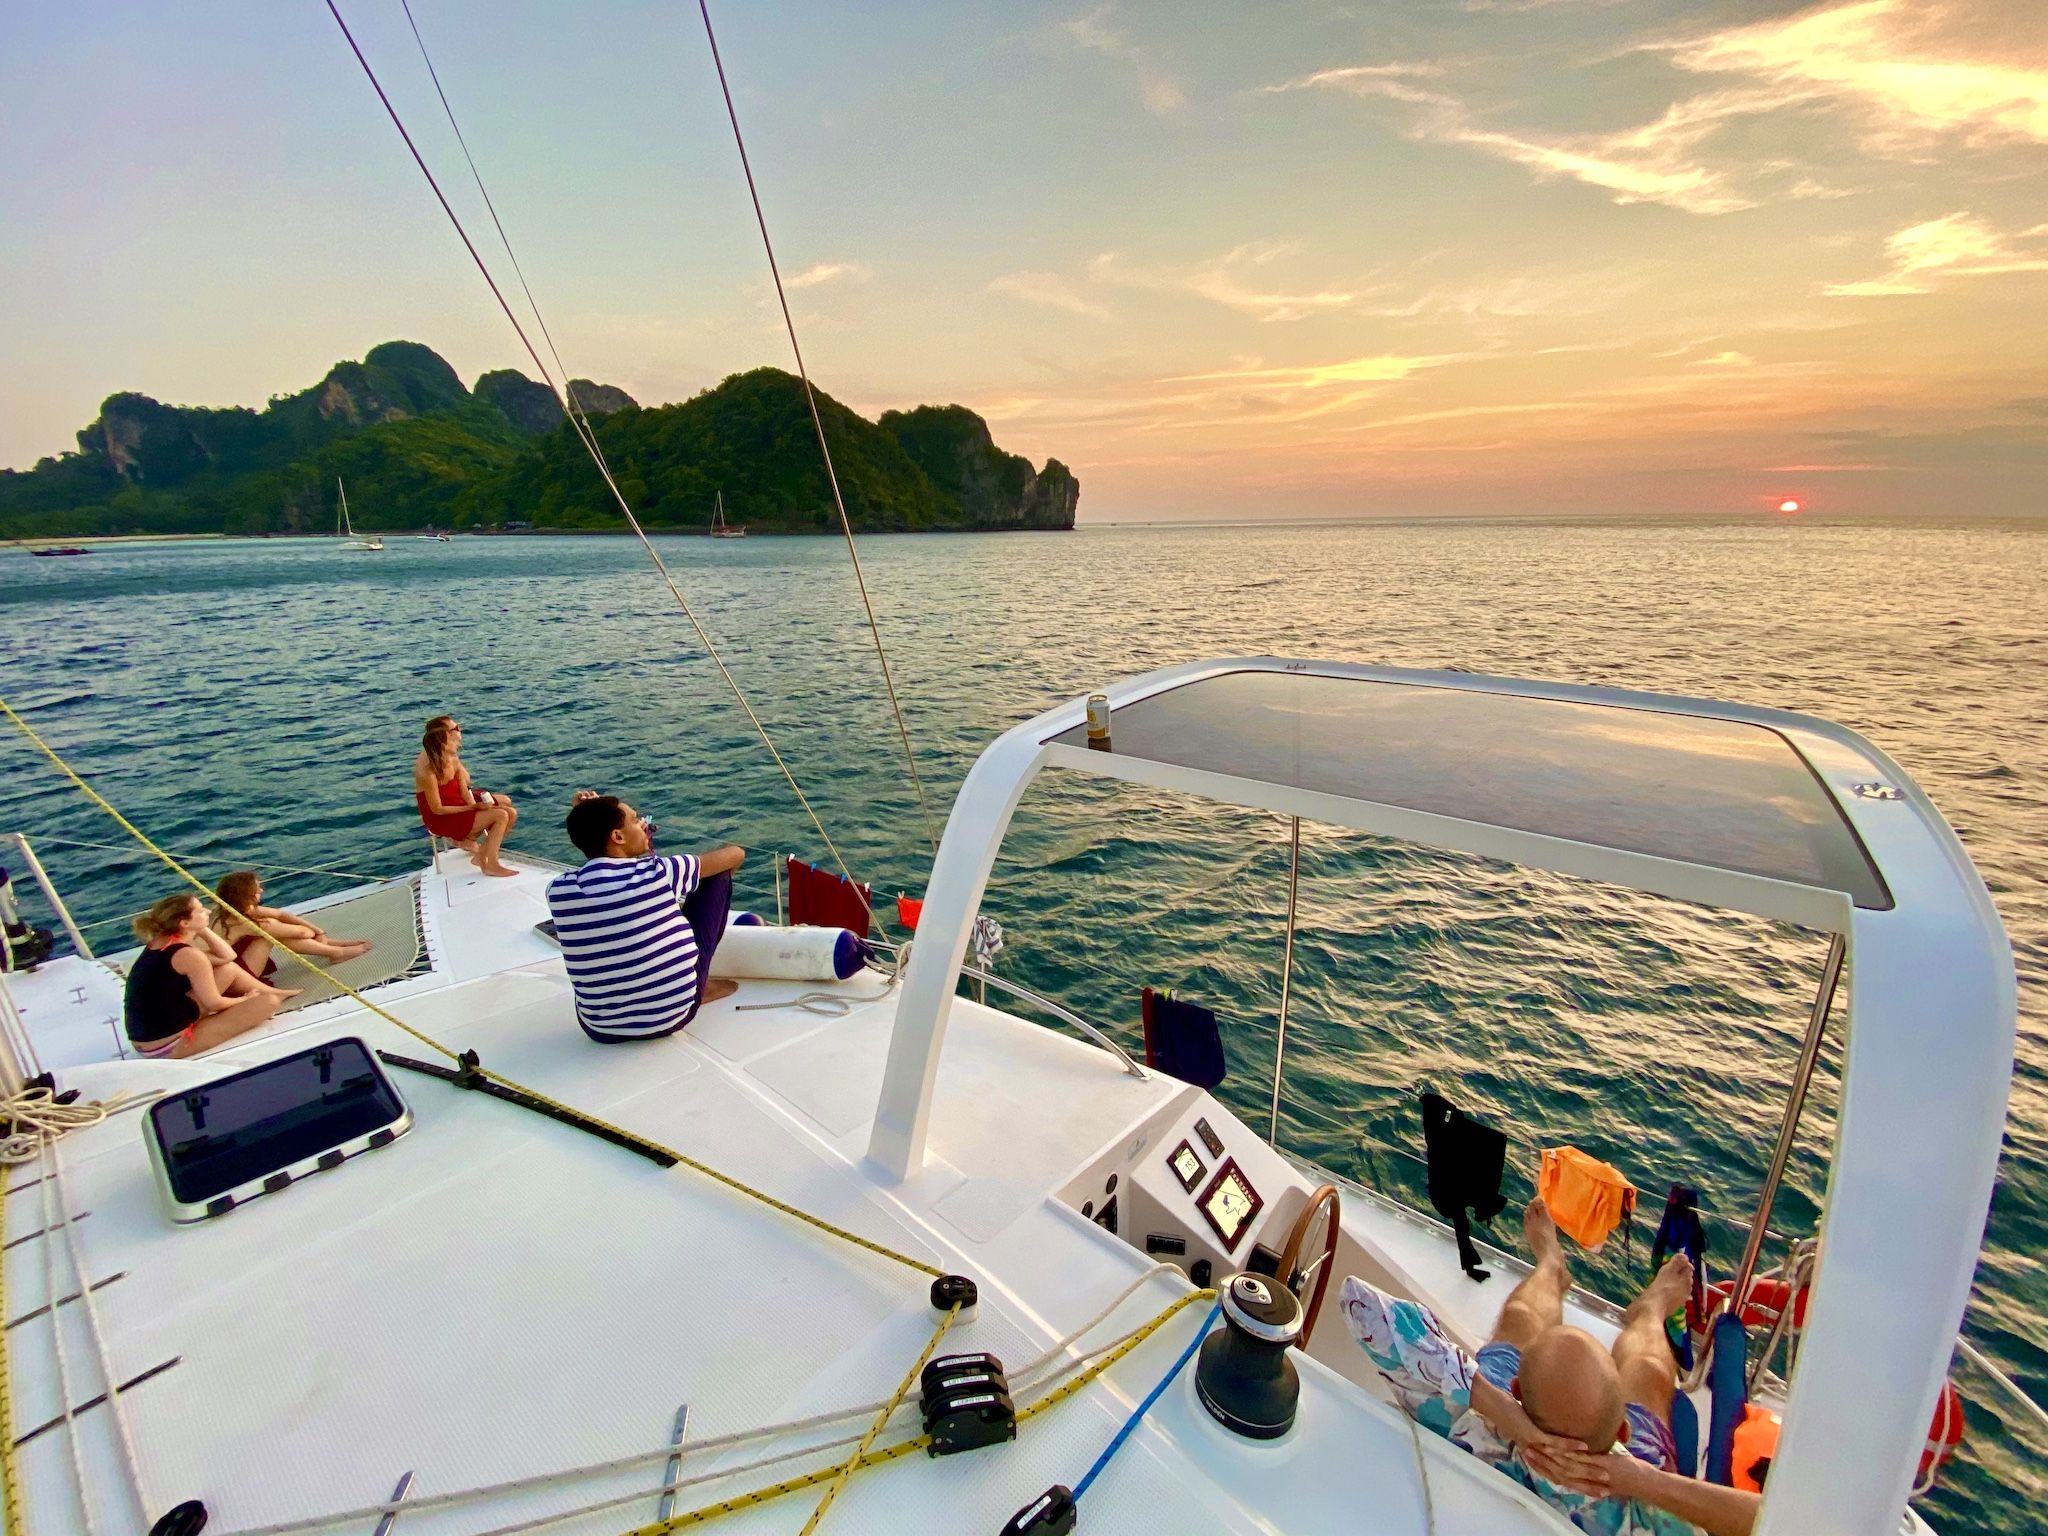 Ganz neue Erfahrung: Eine Phuket-Segeltour bringt auch ganz neue Perspektiven mit sich und kann das Interesse für den Segelsport wecken – Segeln macht nämlich richtig Spaß. Foto: Sascha Tegtmeyer